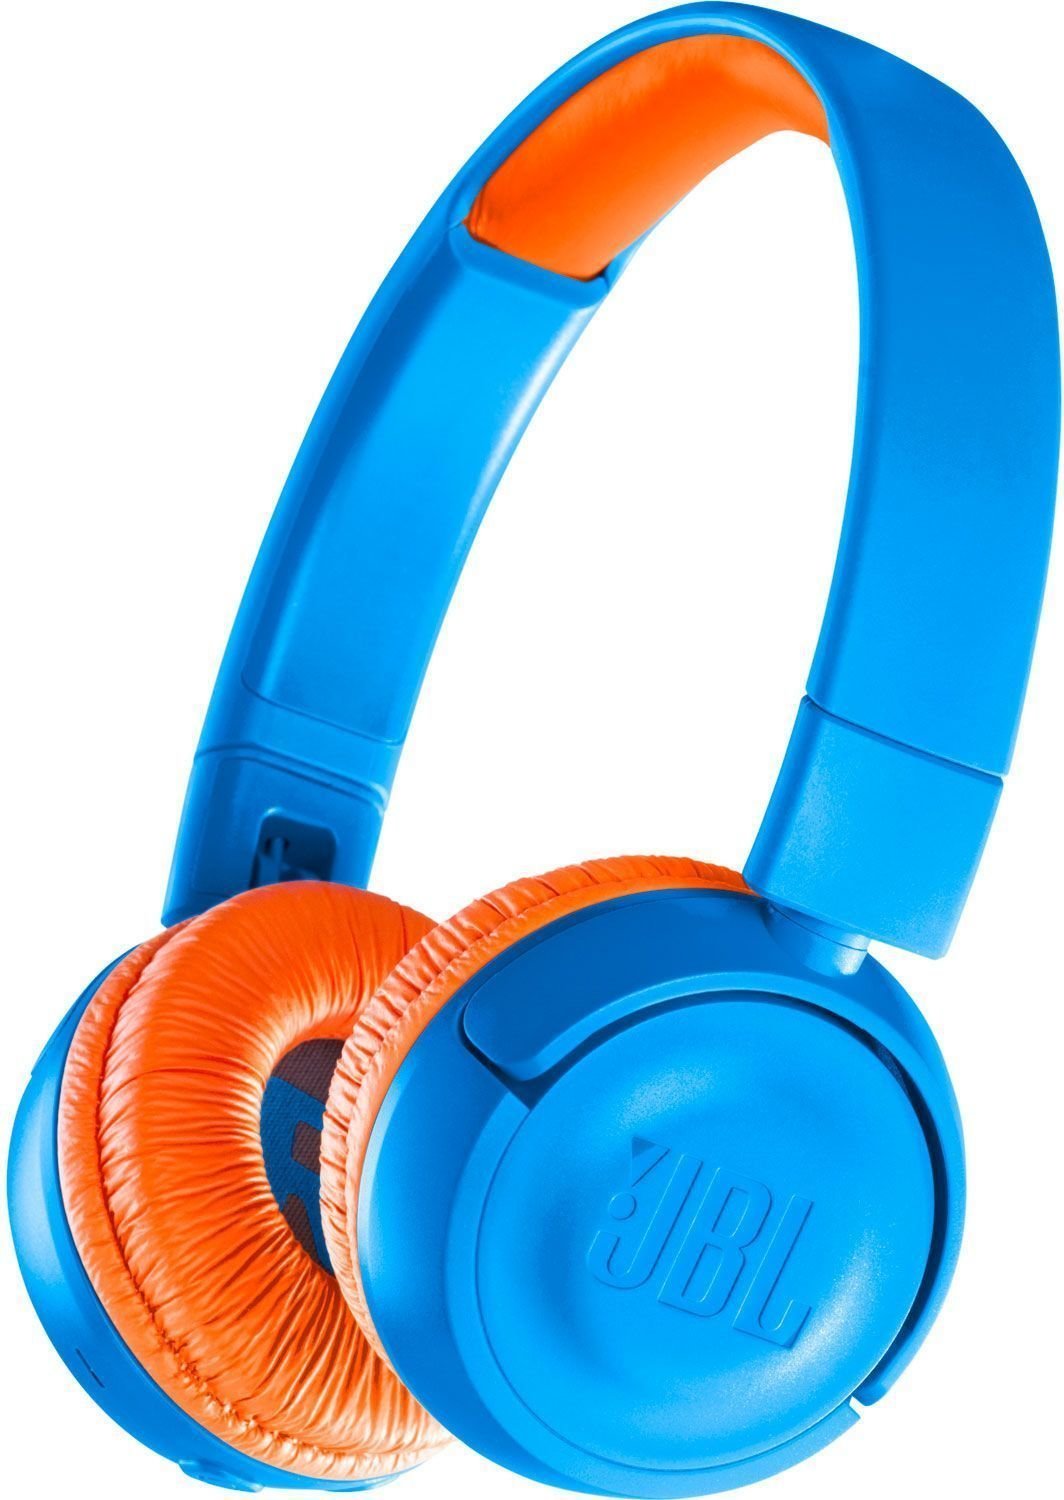 Cuffie Wireless On-ear JBL JR300BT Blue